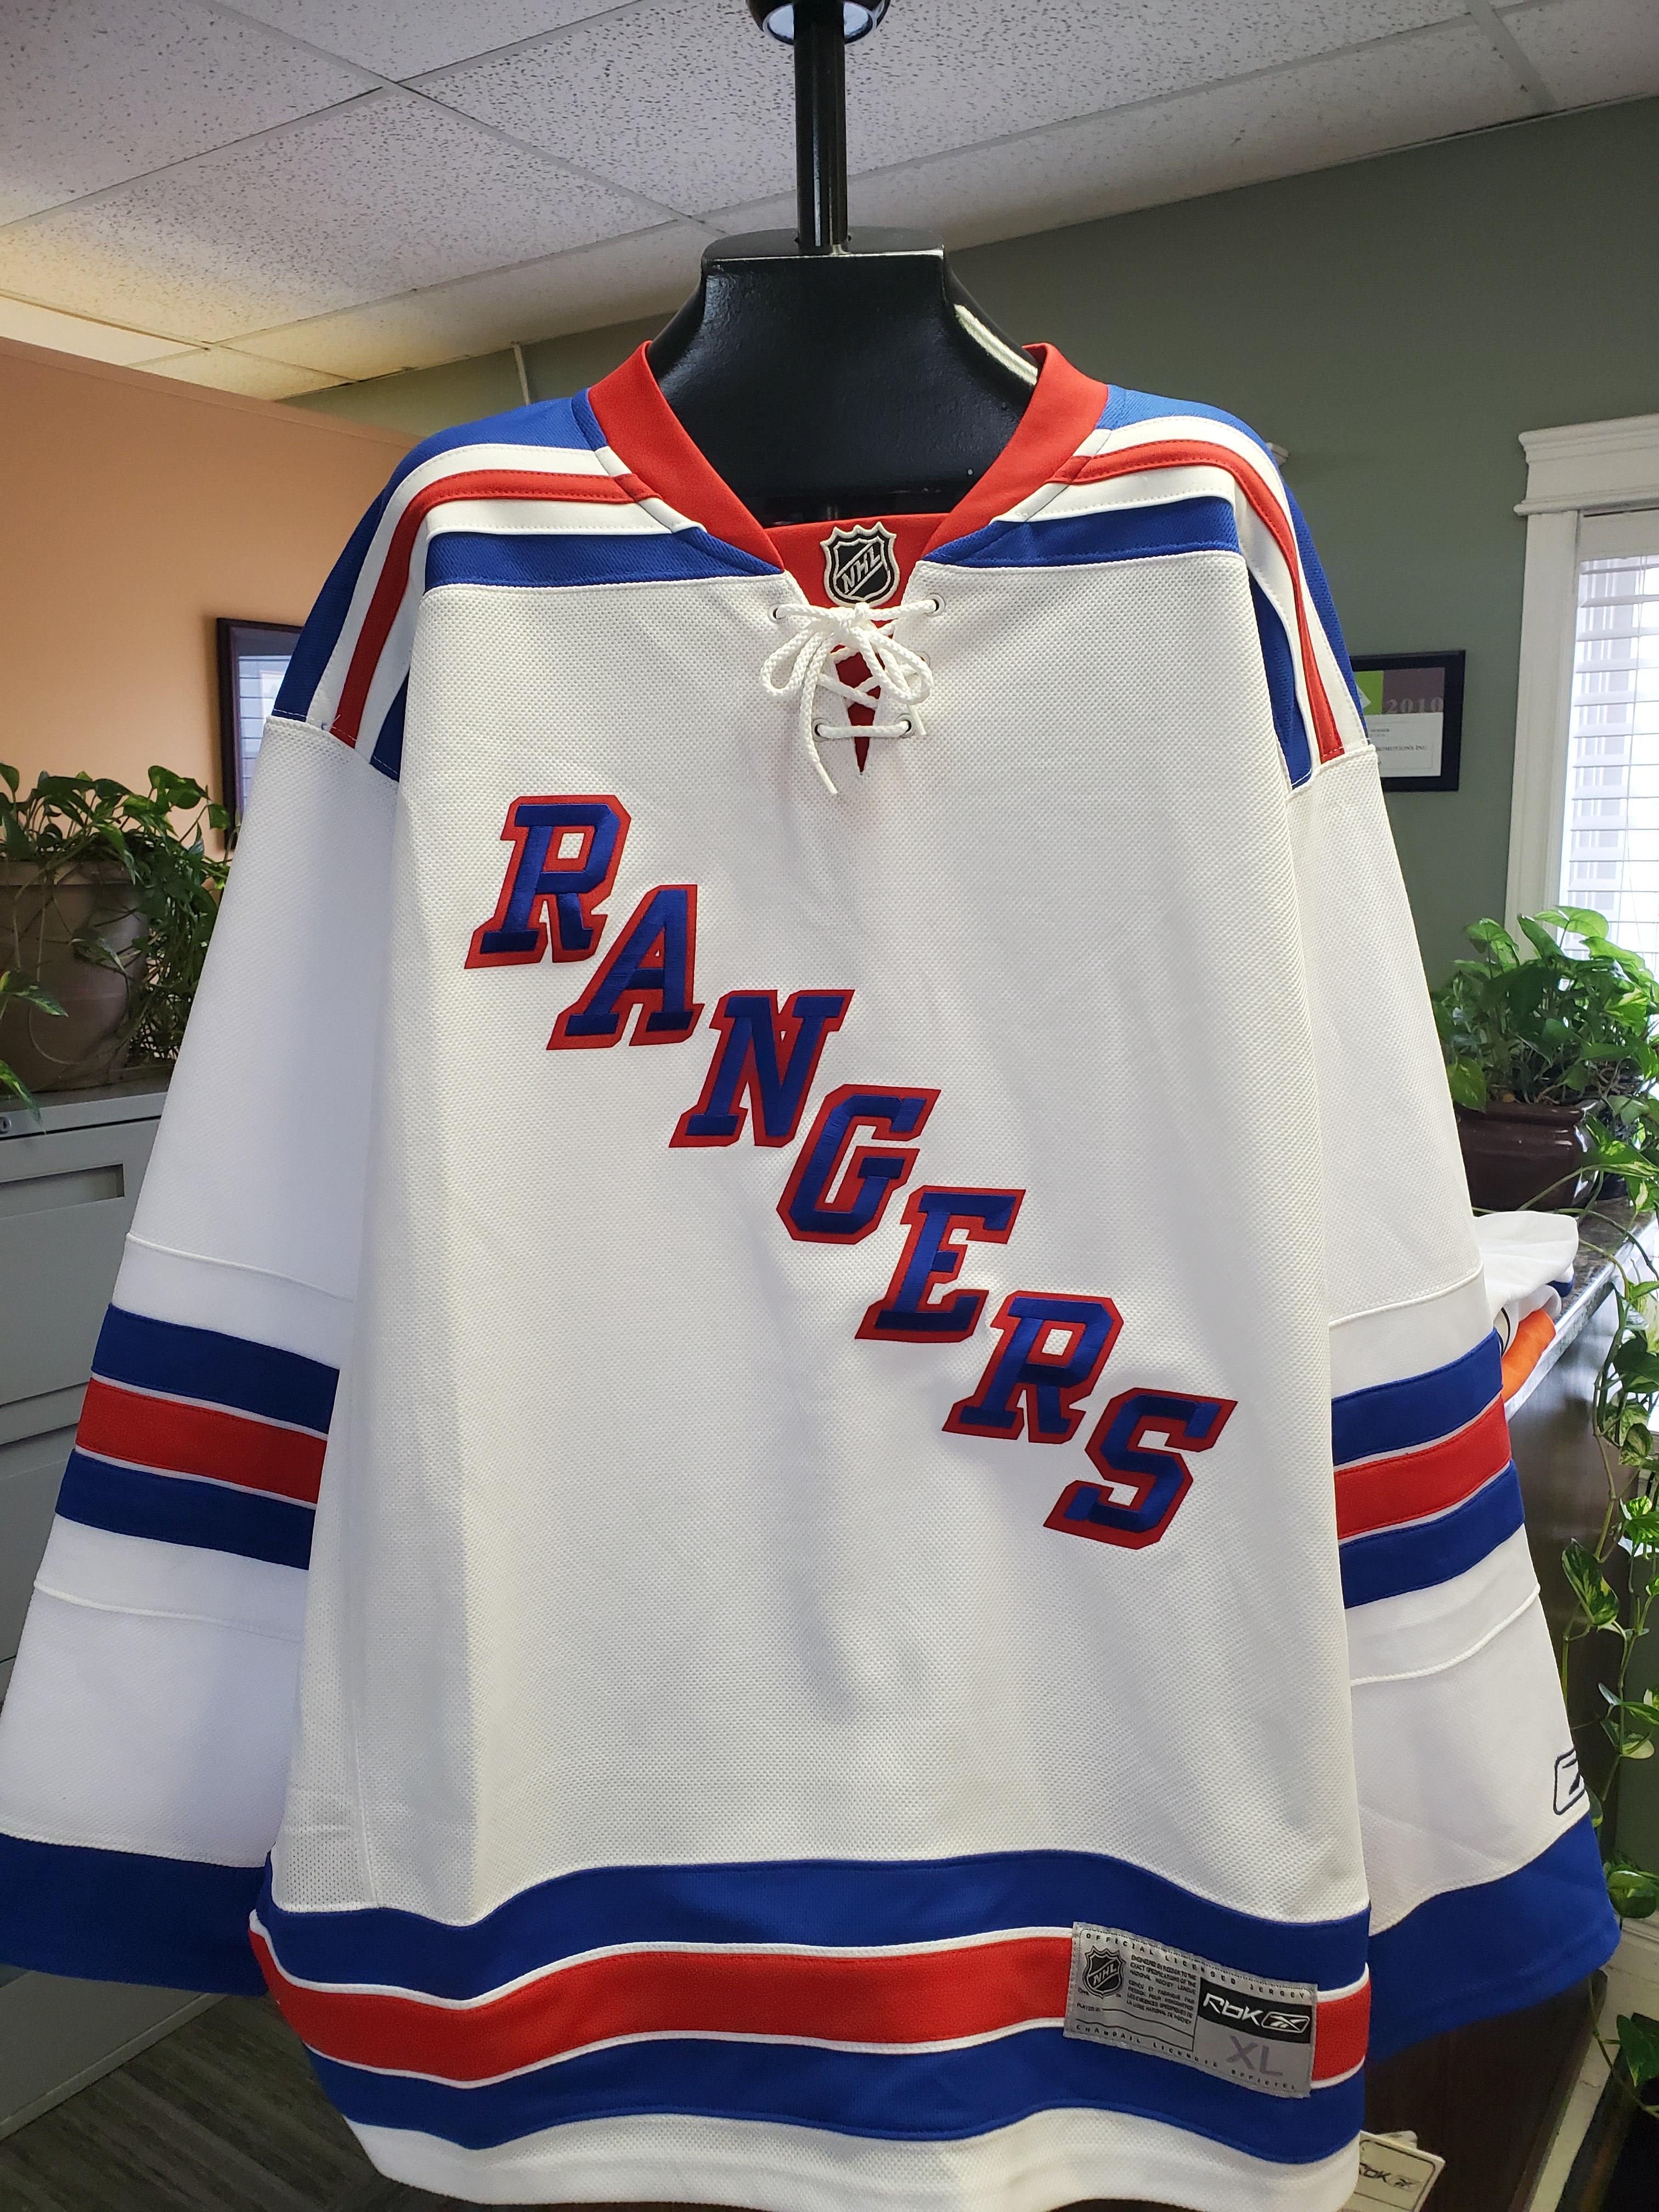 Reebok î€€NHLî€ Replica Hockey Jersey - New York Rangers